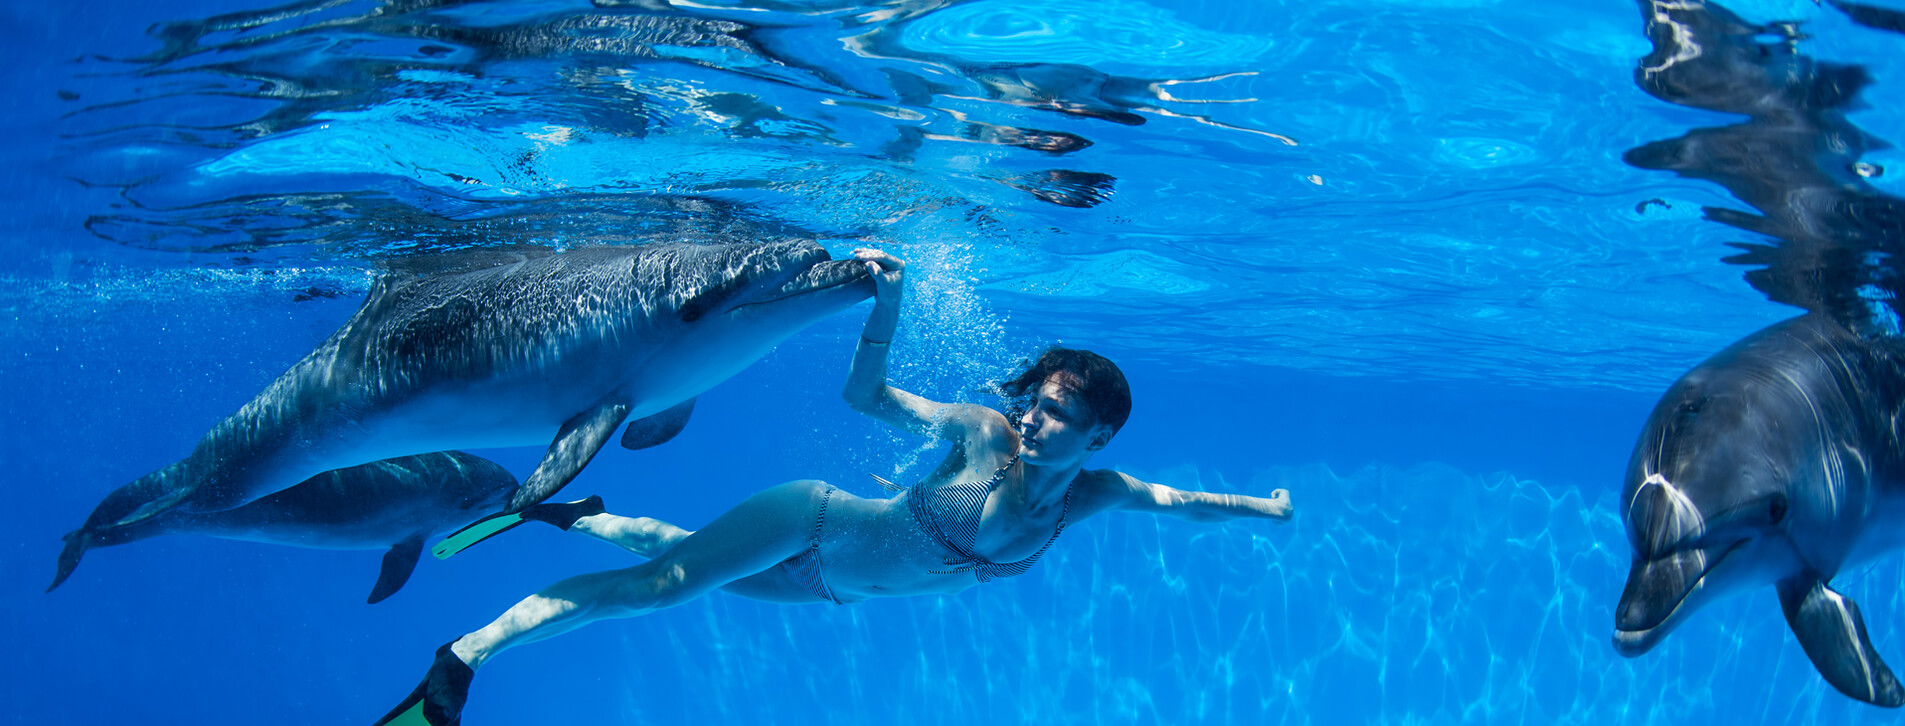 Фото 1 - Плавание с дельфинами для компании